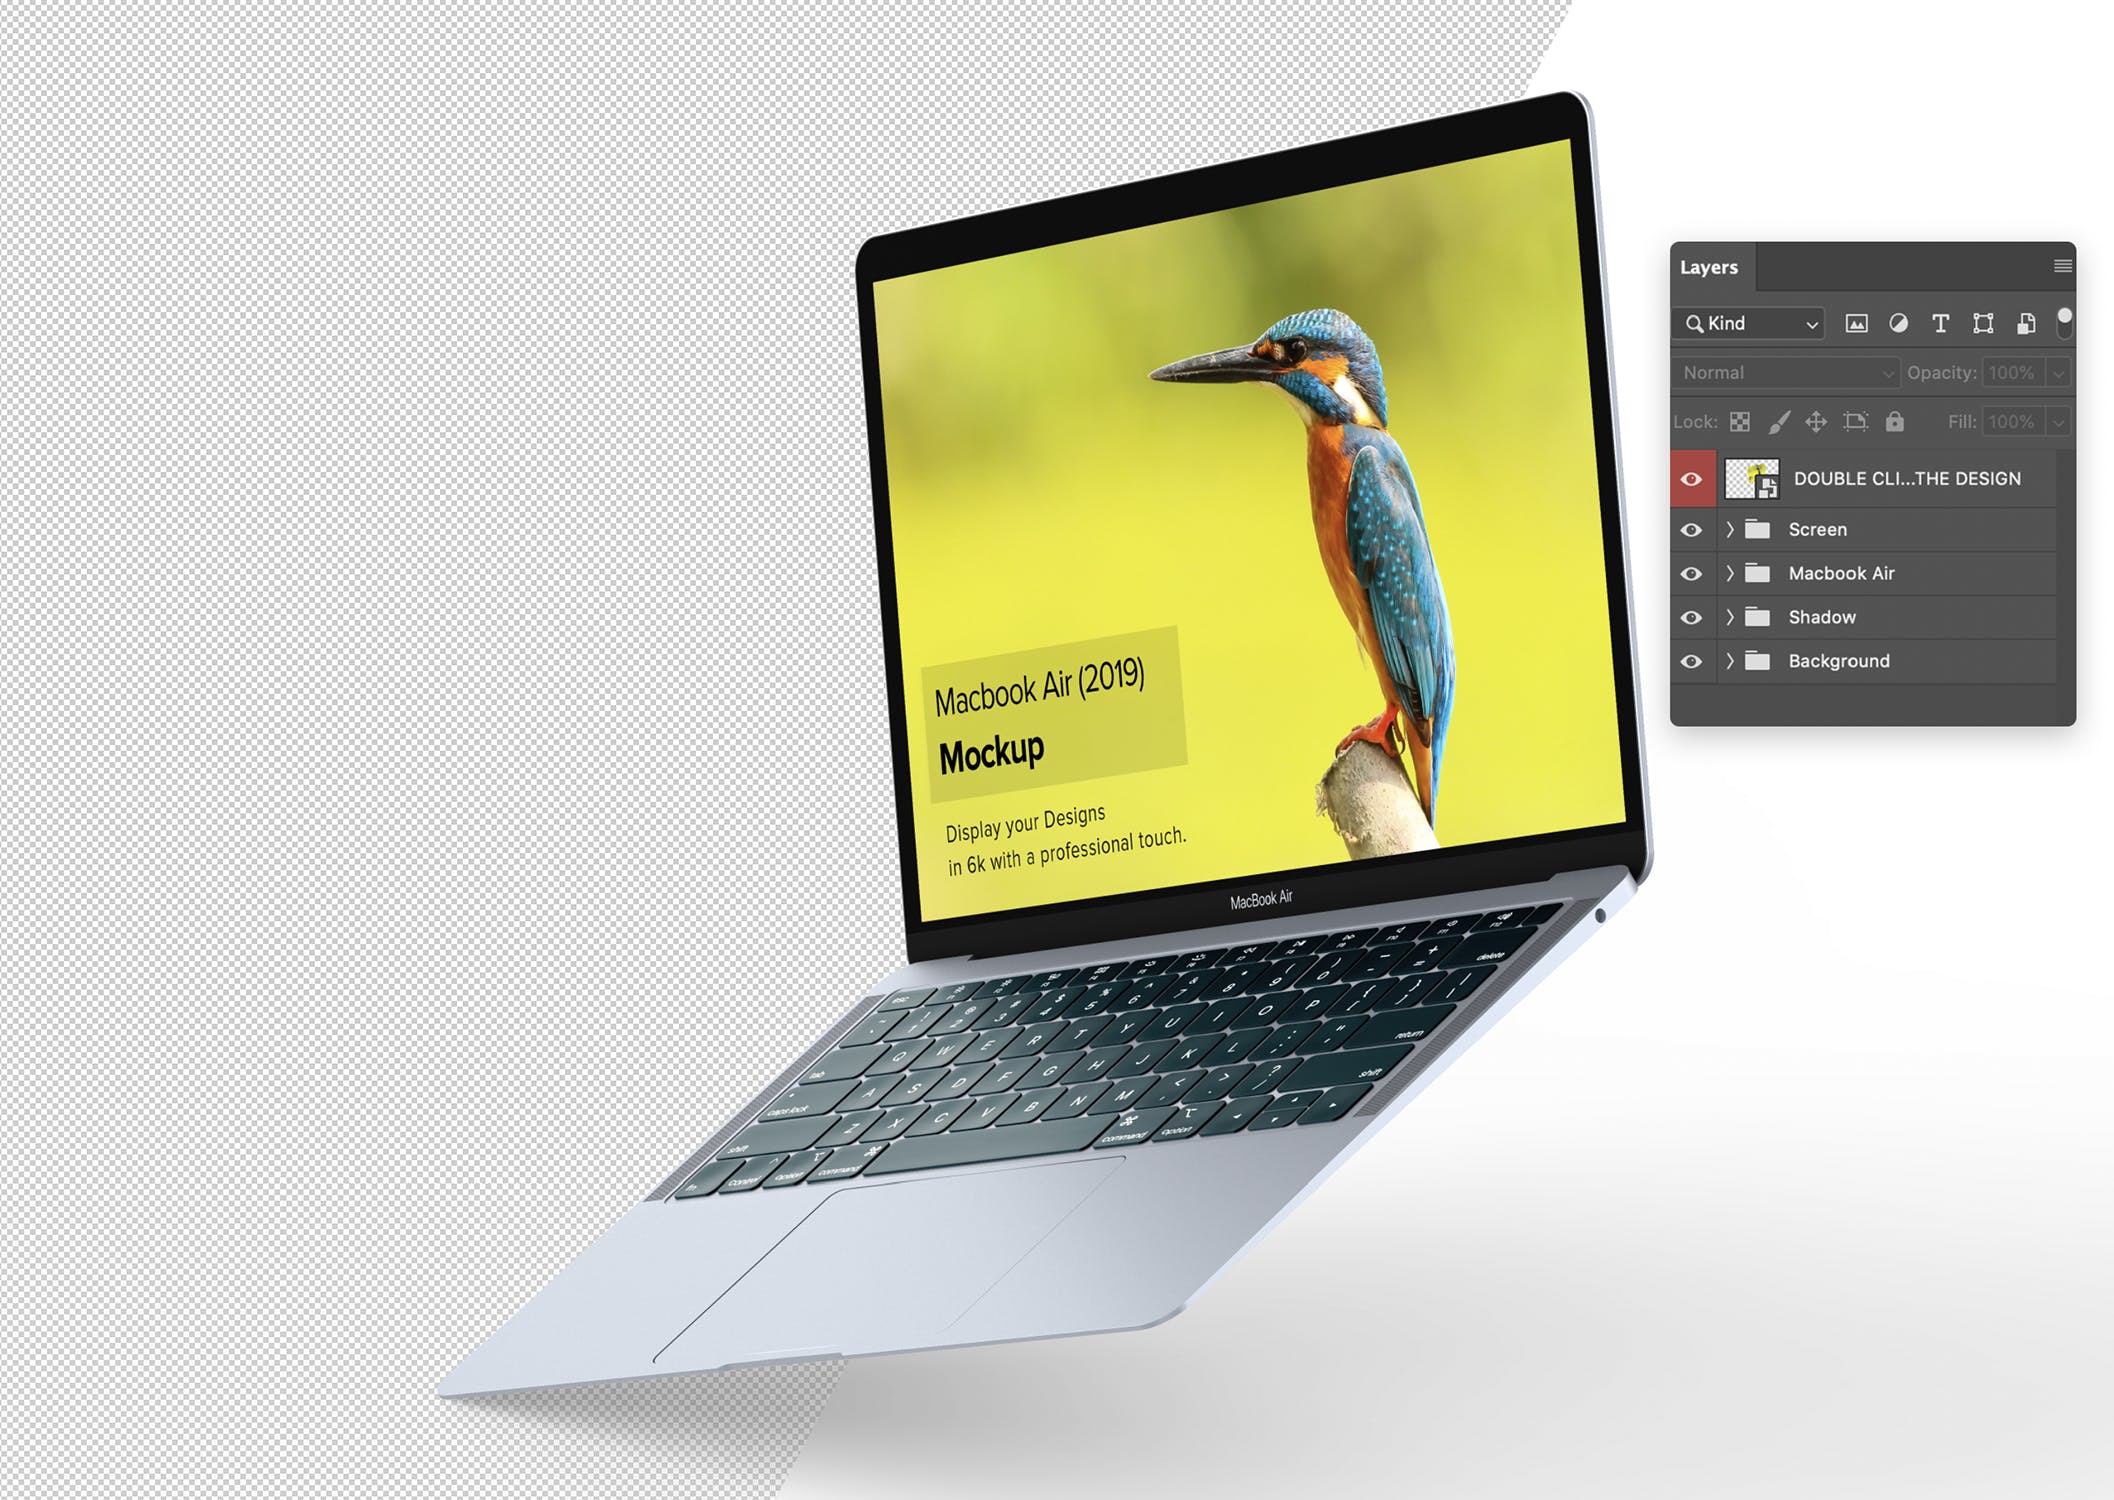 4K高清分辨率苹果超极本电脑MacBook Air样机 Macbook Air Mockup插图(5)